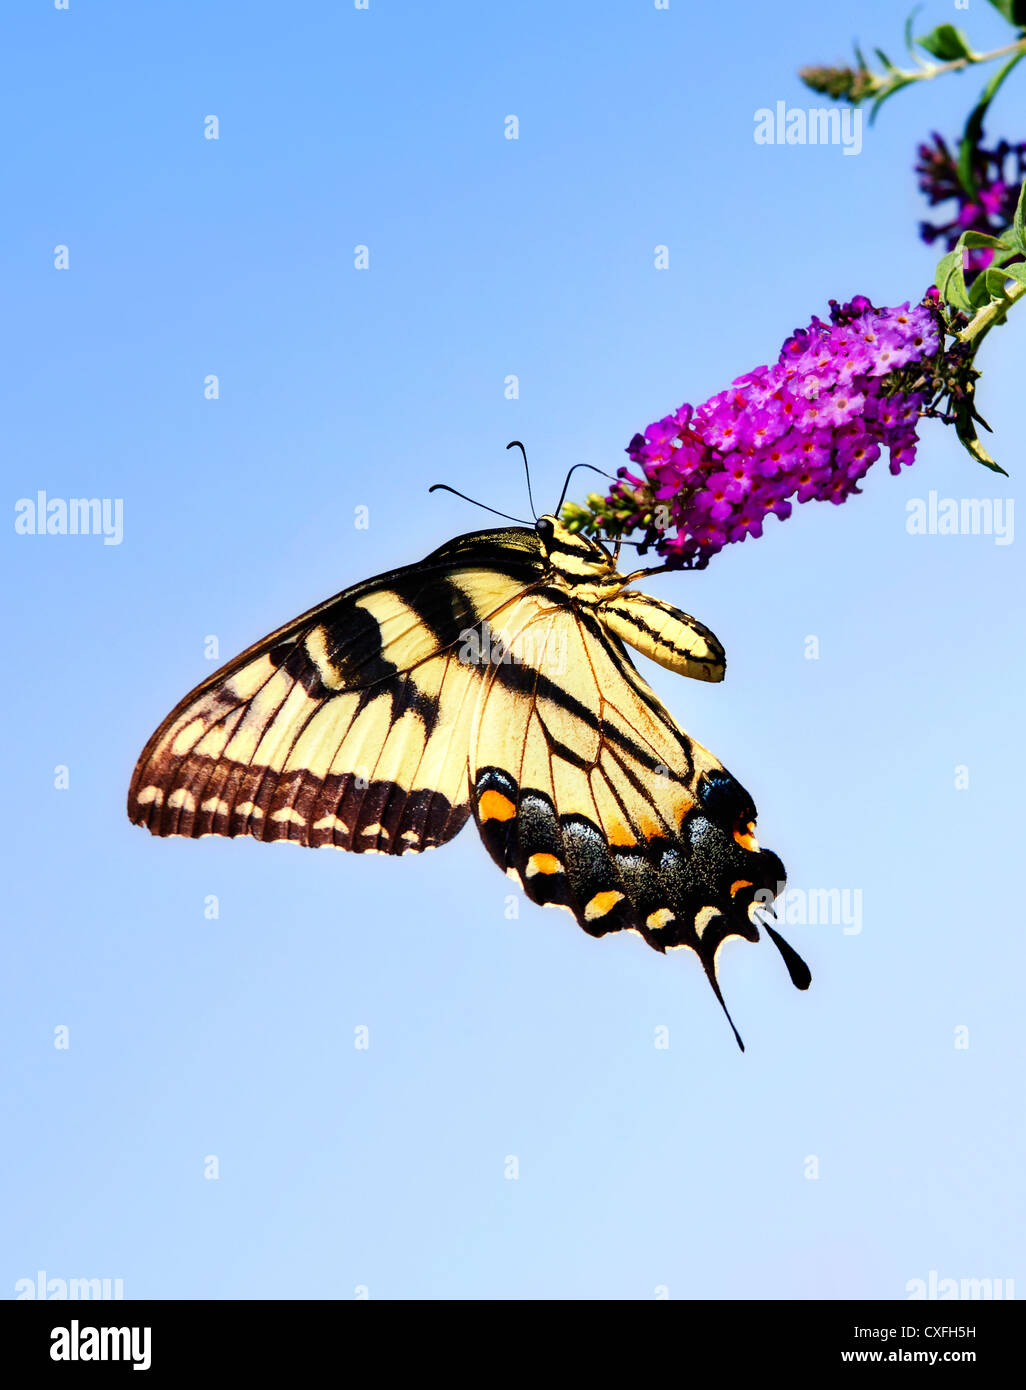 Orientale a coda di rondine di Tiger butterfly (Papilio glaucus) sulla boccola a farfalla fiore Foto Stock